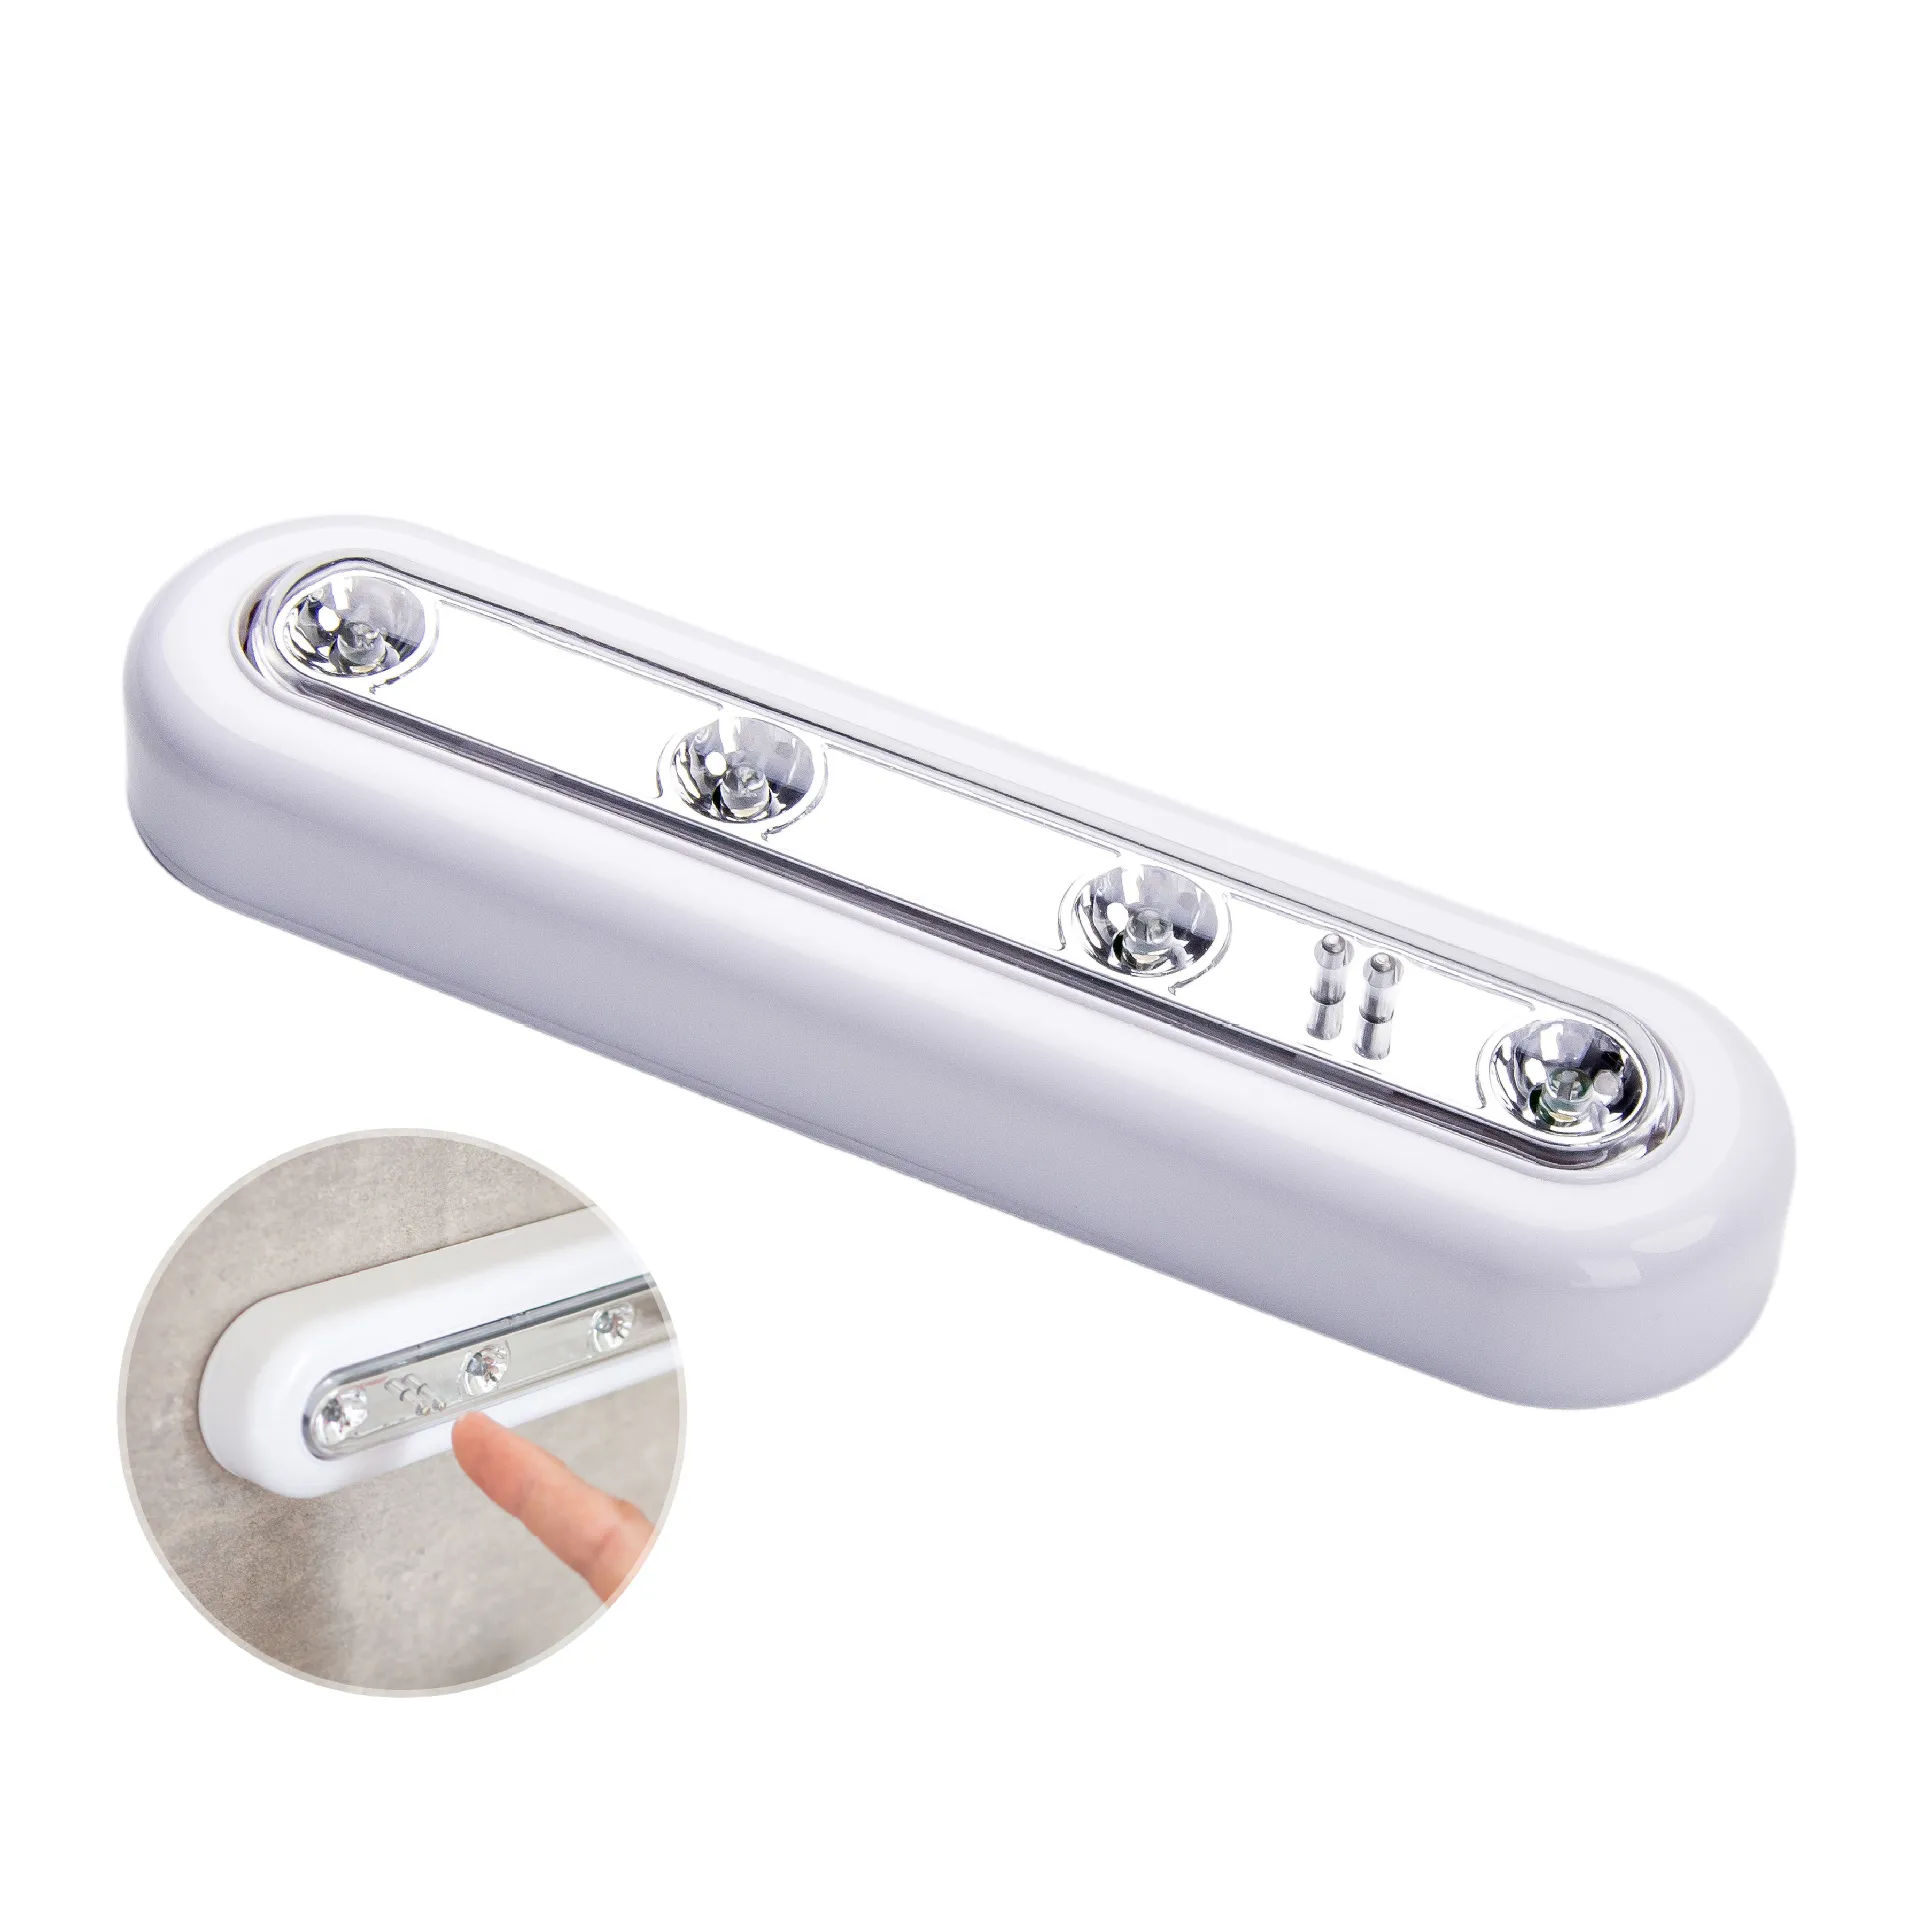 Sensor-Touch-Lichter für den Innenbereich, weiß, schnurlos, Batterien, unter dem Schrank, Push-Tap-Stick-Lampe, 4 LED-Nachtlicht, Notbetrieb